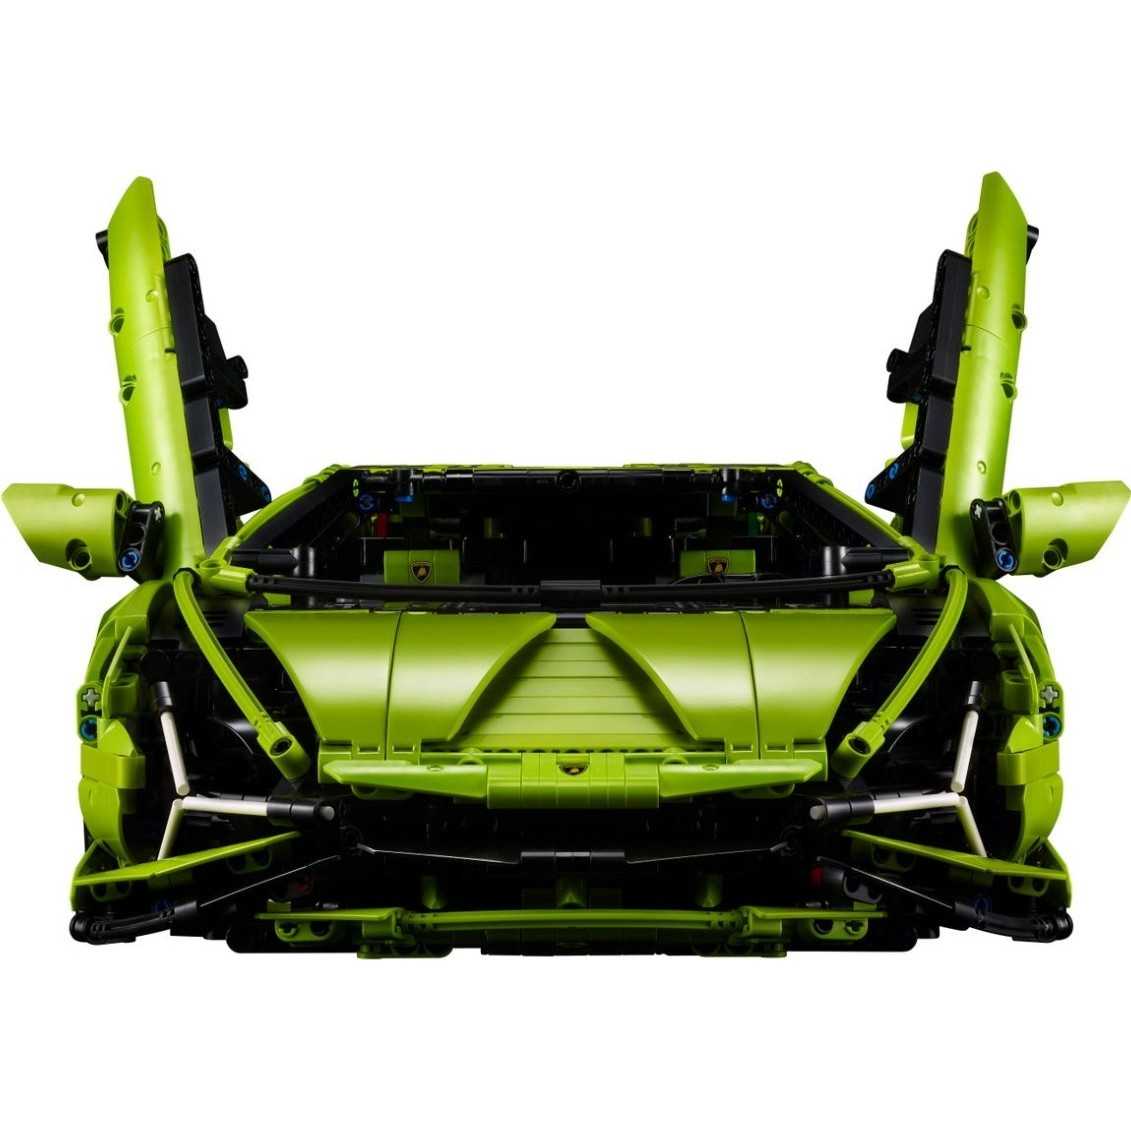 В сумме Lamborghini Sian FKP 37 выдает аж 819 лс Все это работает с 7 ступенчатым роботом с возможностью адаптации и очень быстрыми переключениями